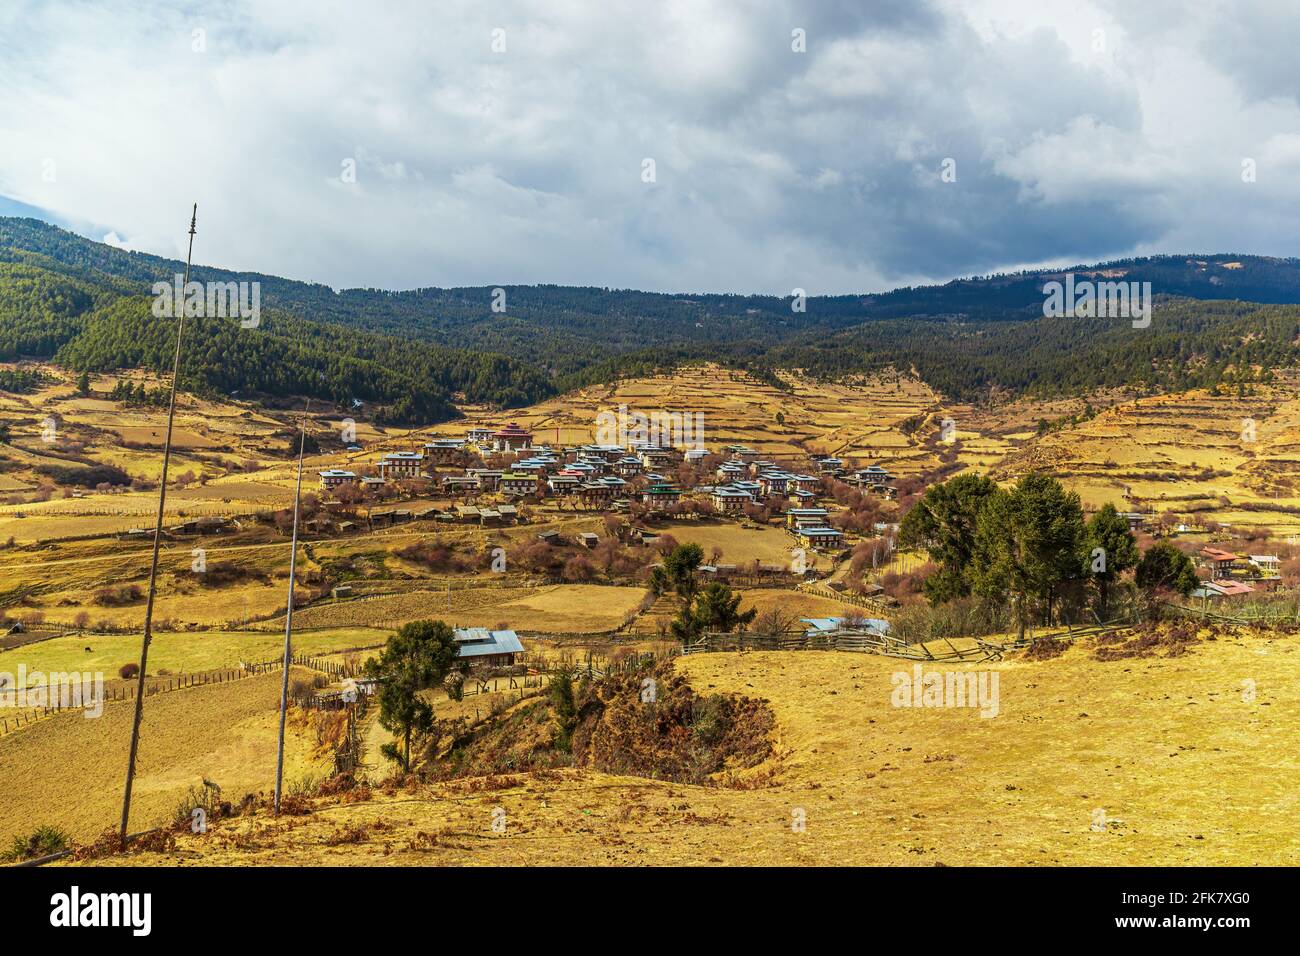 Ein bhutanesisches Dorf in der Region des Phobjikha Tal Stockfoto